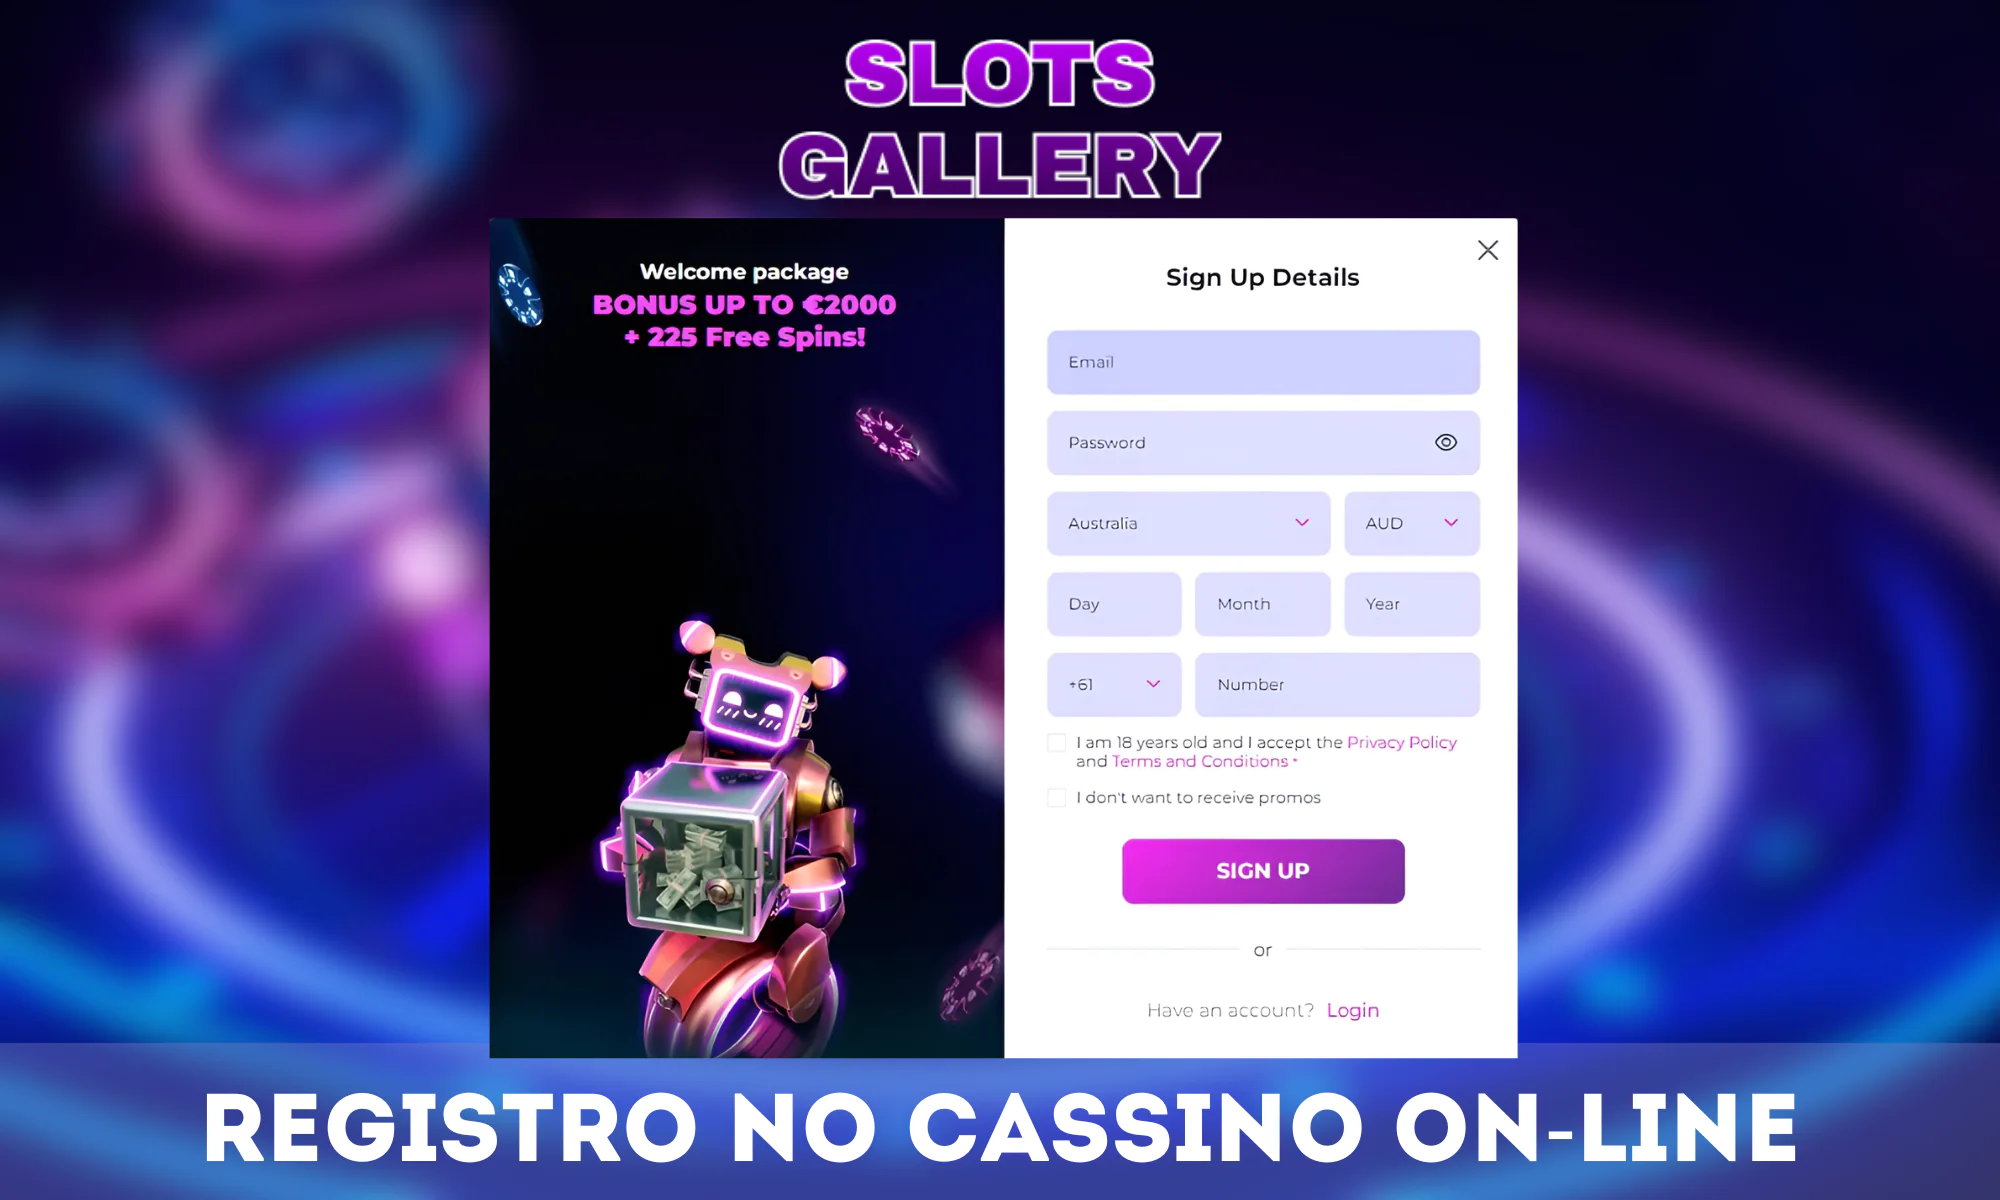 Instruções passo a passo sobre como se registrar no Slots Gallery Casino